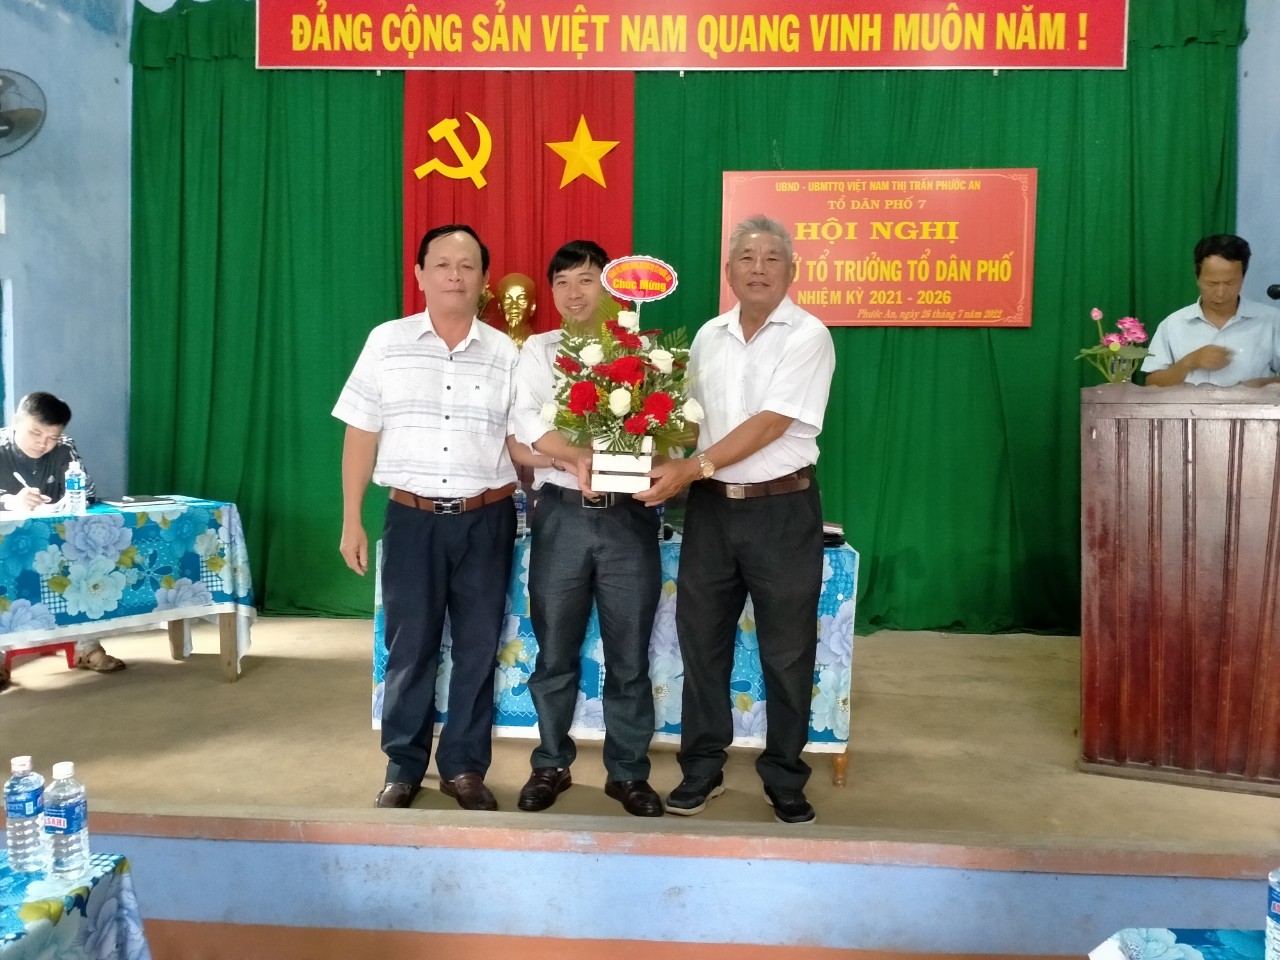 Tổ dân phố 7 thị trấn Phước an đã tổ chức Hội nghị bầu cử tổ trưởng TDP nhiệm kì 2021-2026